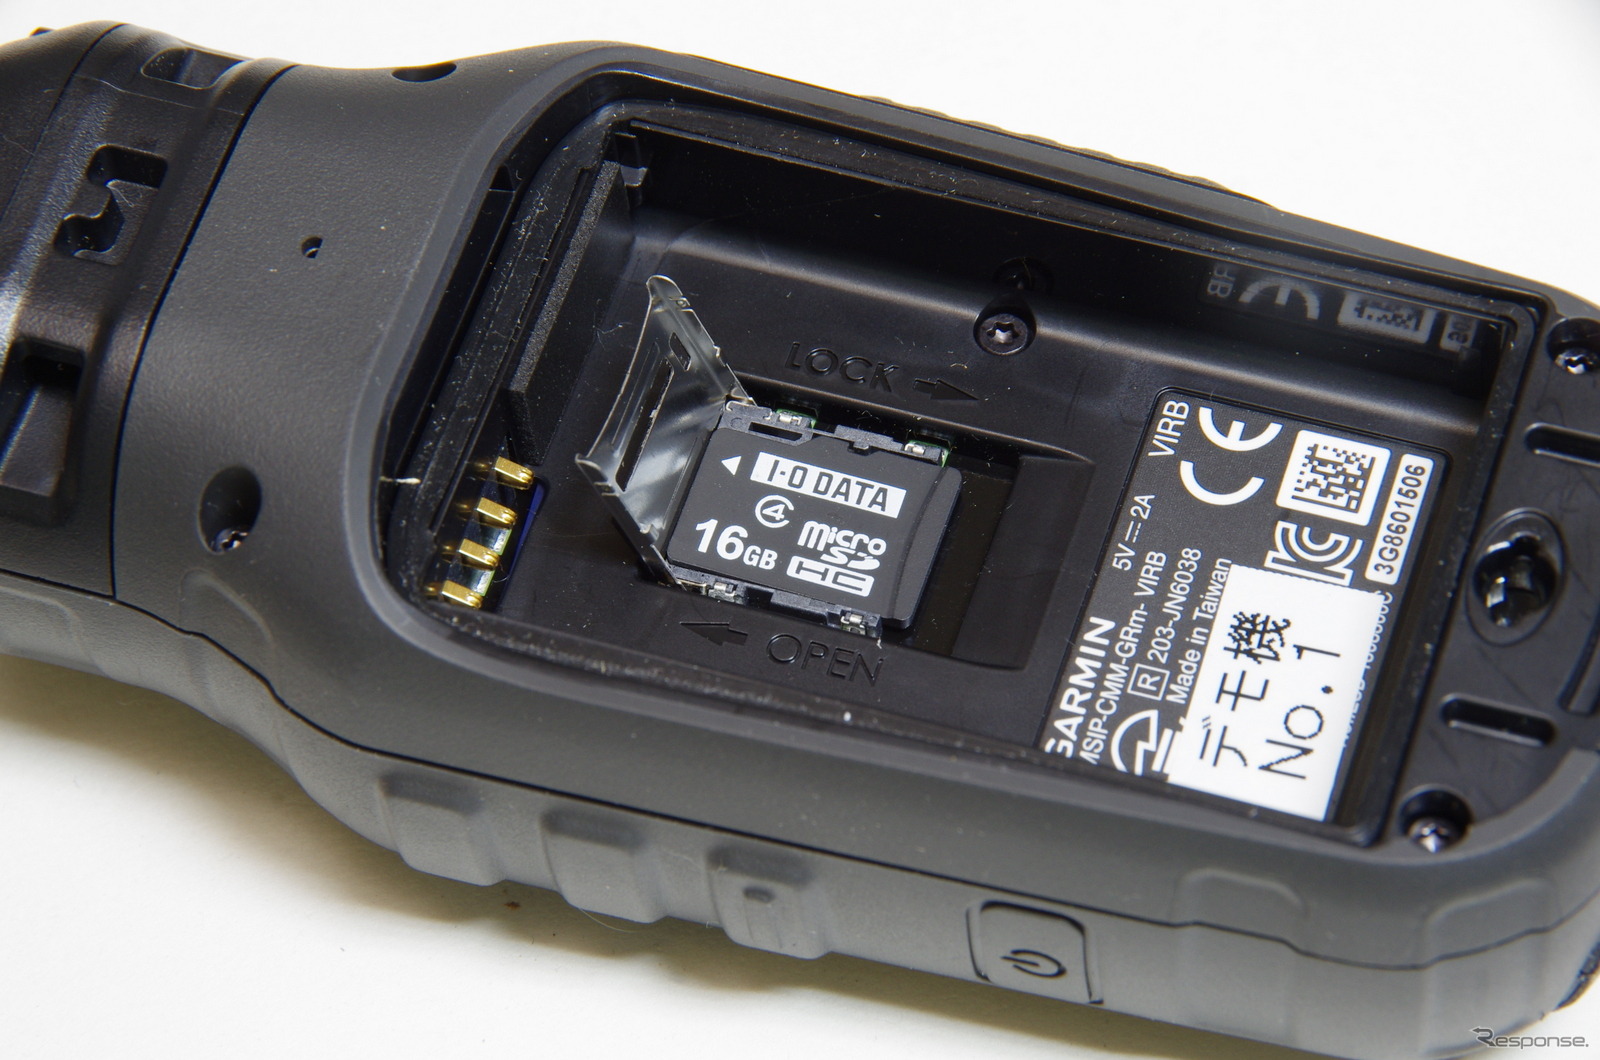 バッテリーを外すとMicroCDカードスロットがある。また、バッテリーを外せるということは、予備バッテリーを携行できることを意味する。